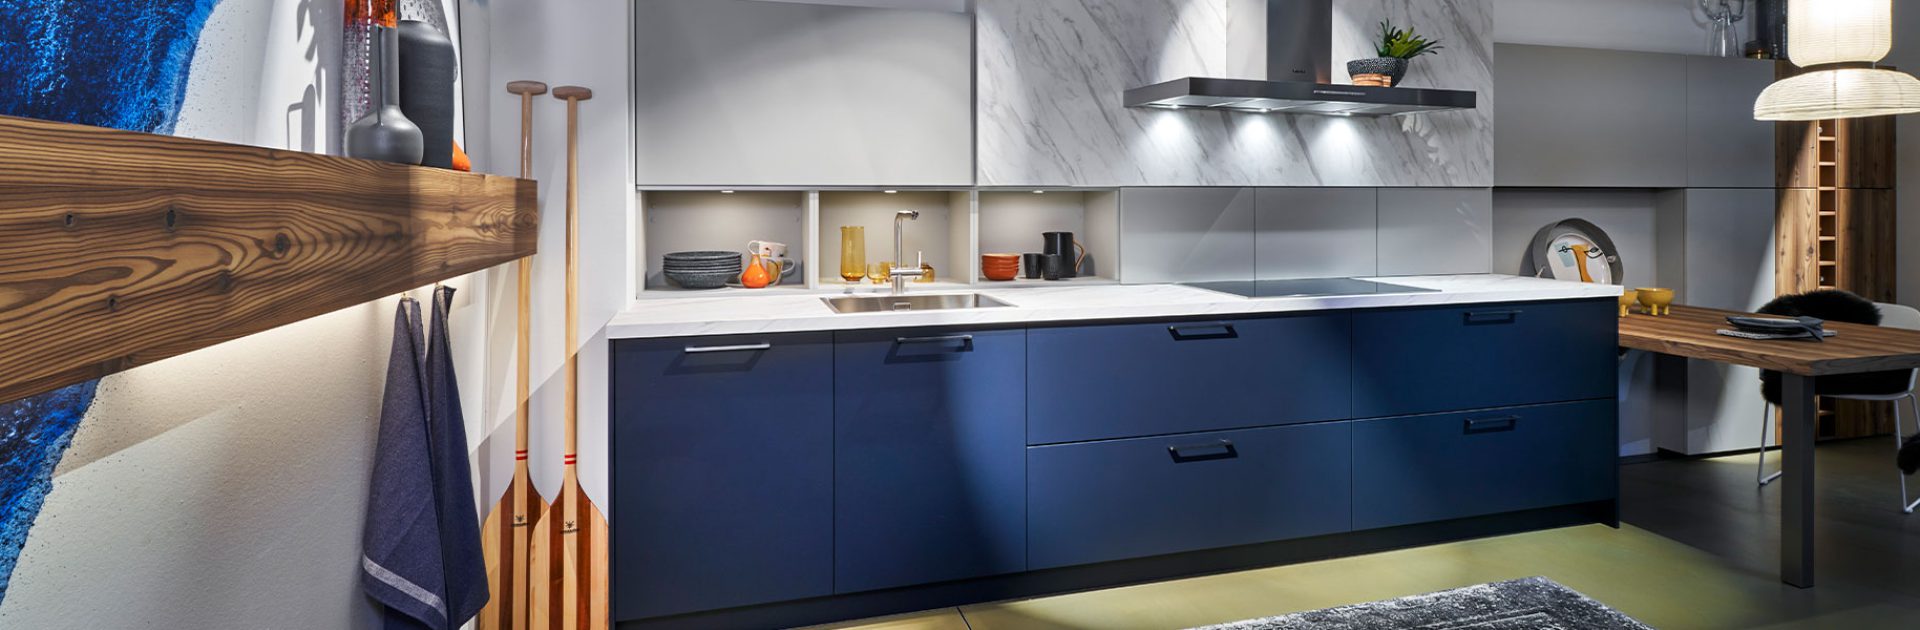 Donkerblauwe rechte Systemat keuken met marmeren achterwand | Eigenhuis Keukens